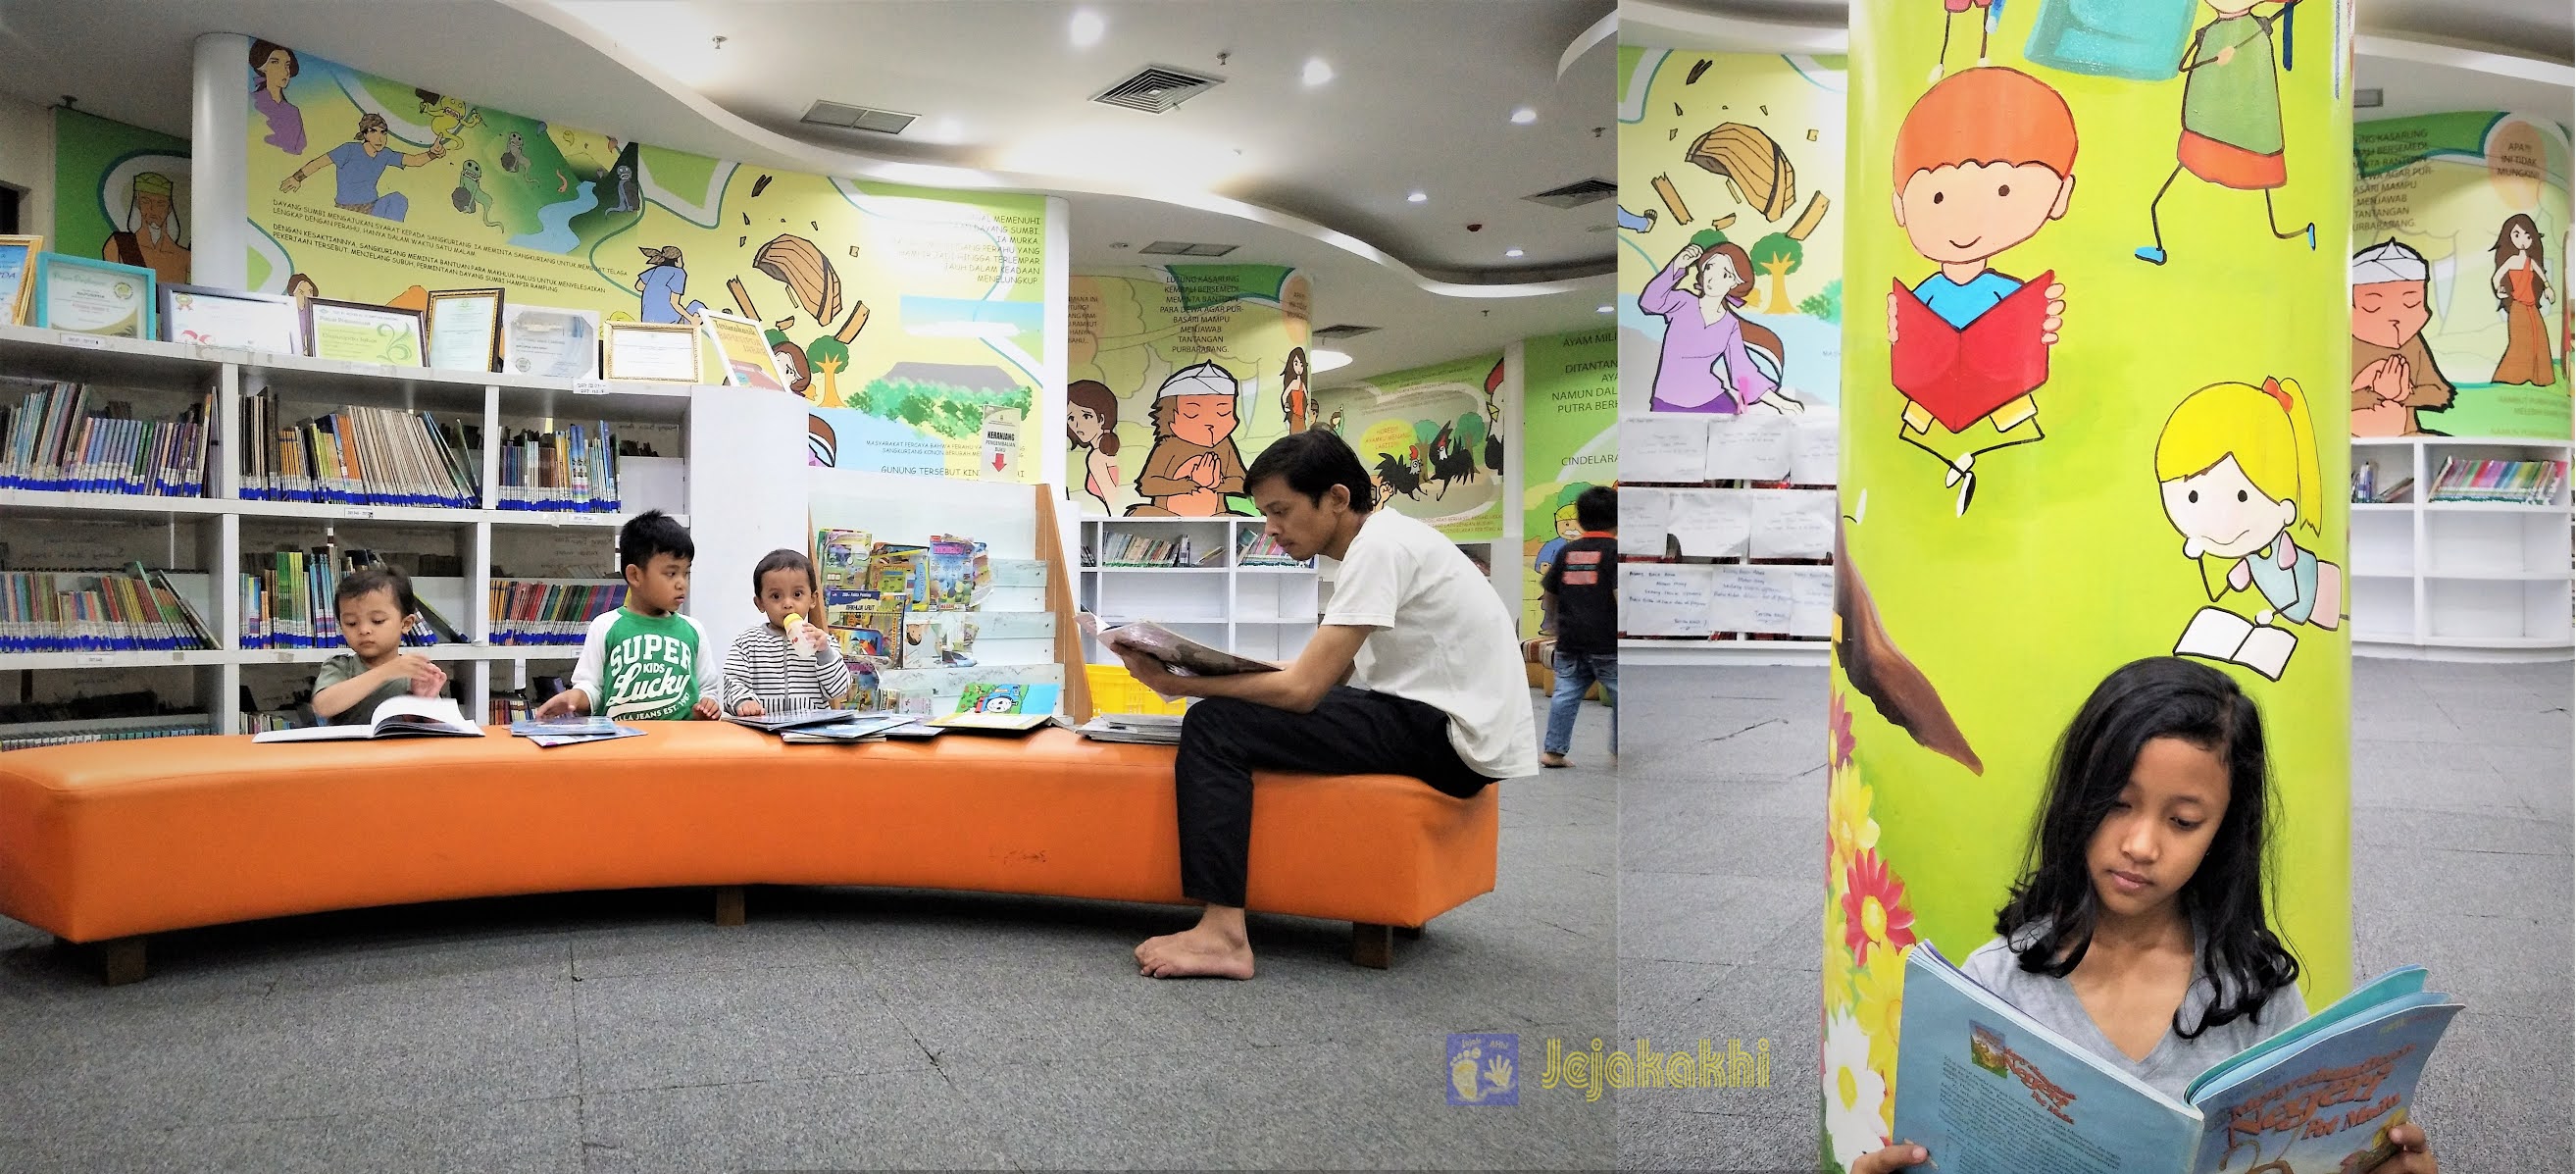 [Jejakakhi]Belajar-dan-Bermain-di-Perpustakaan-Anak-Dispusipda-Provinsi-Jawa-Barat